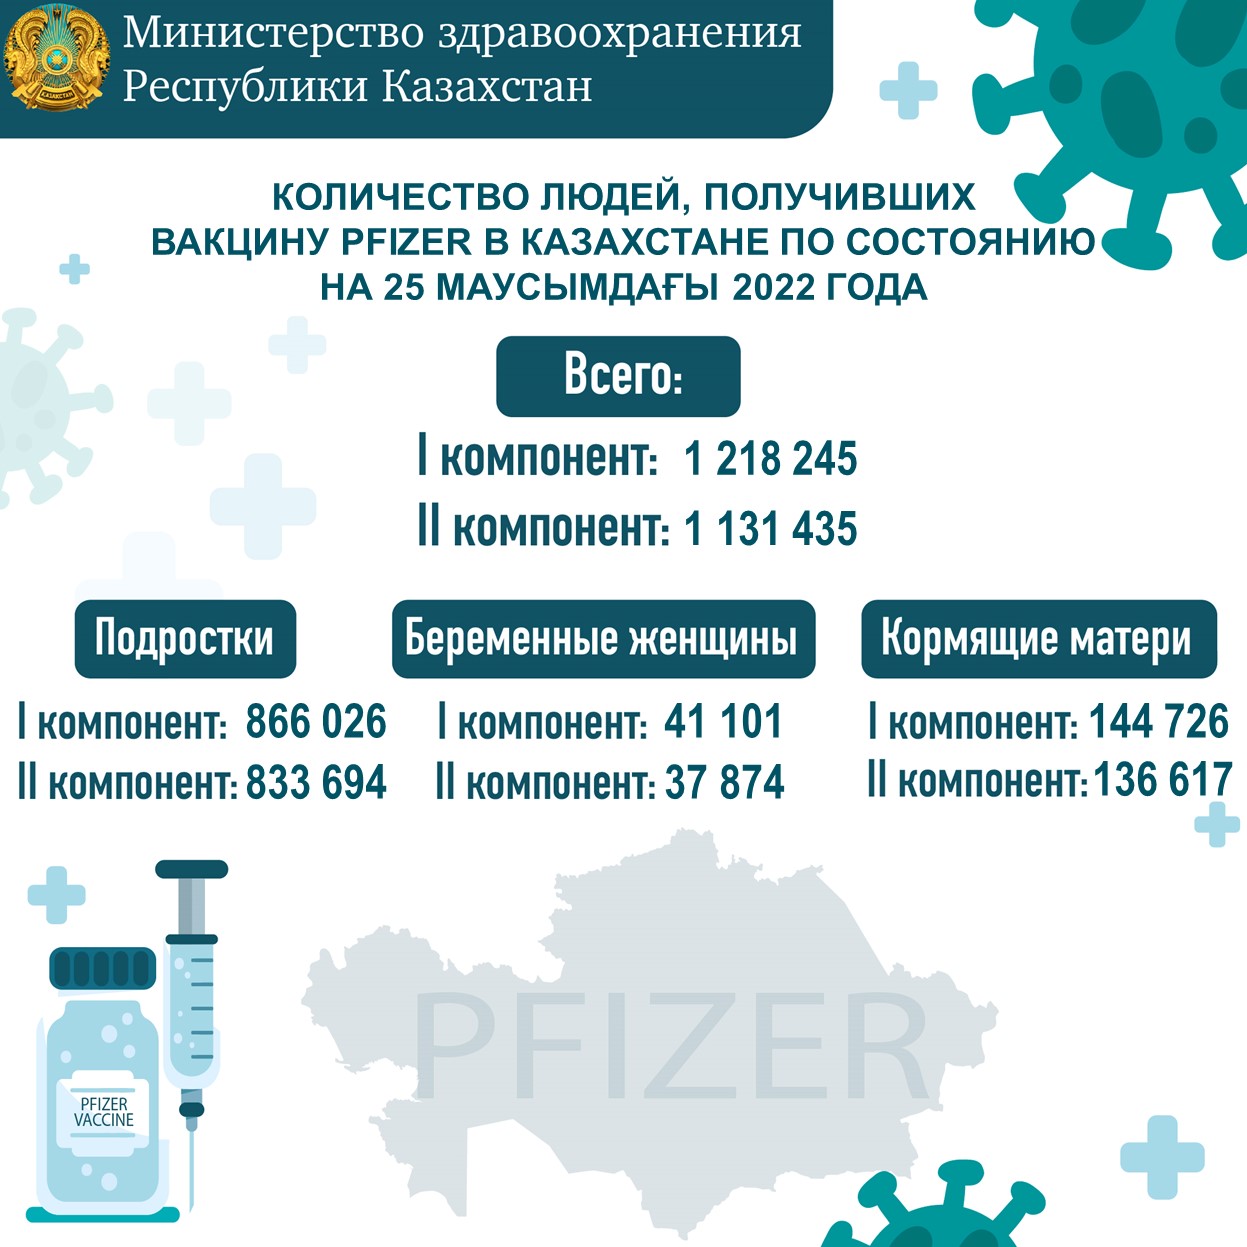 Количество людей, получивших вакцину Рfizer в Казахстане по состоянию на 25 июня 2022 года